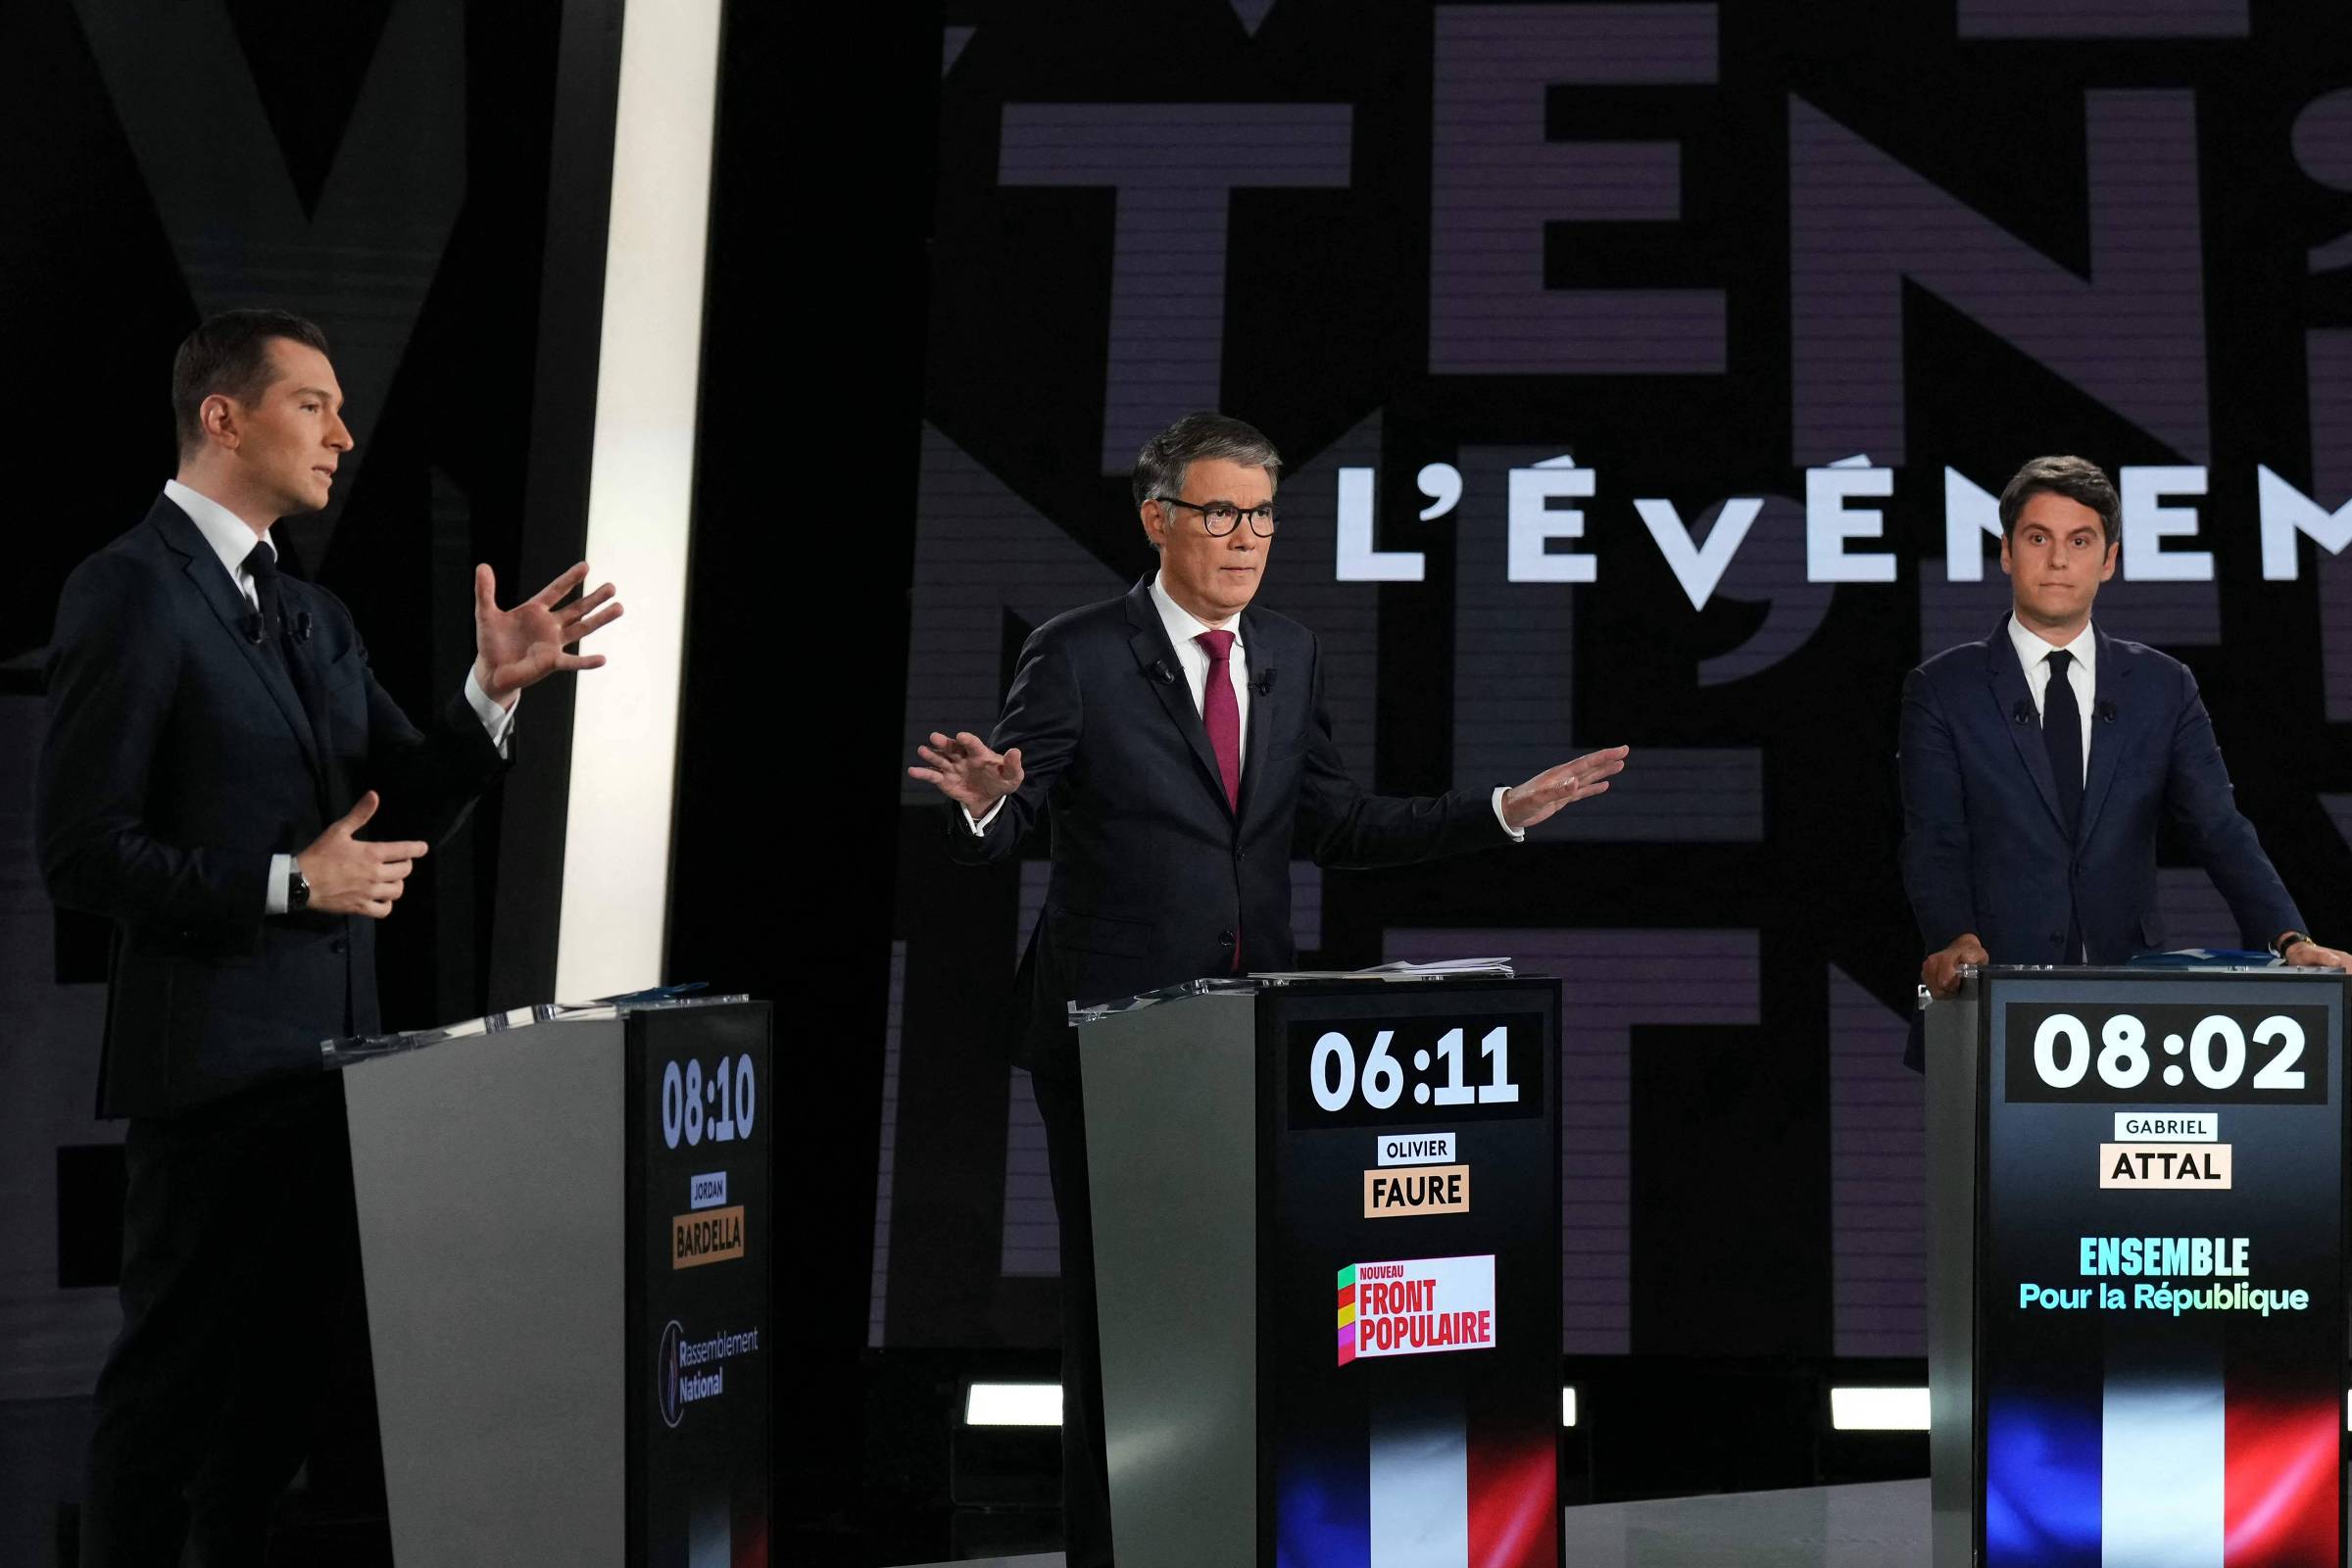 Idade dos candidatos em destaque nas eleições na França e nos EUA